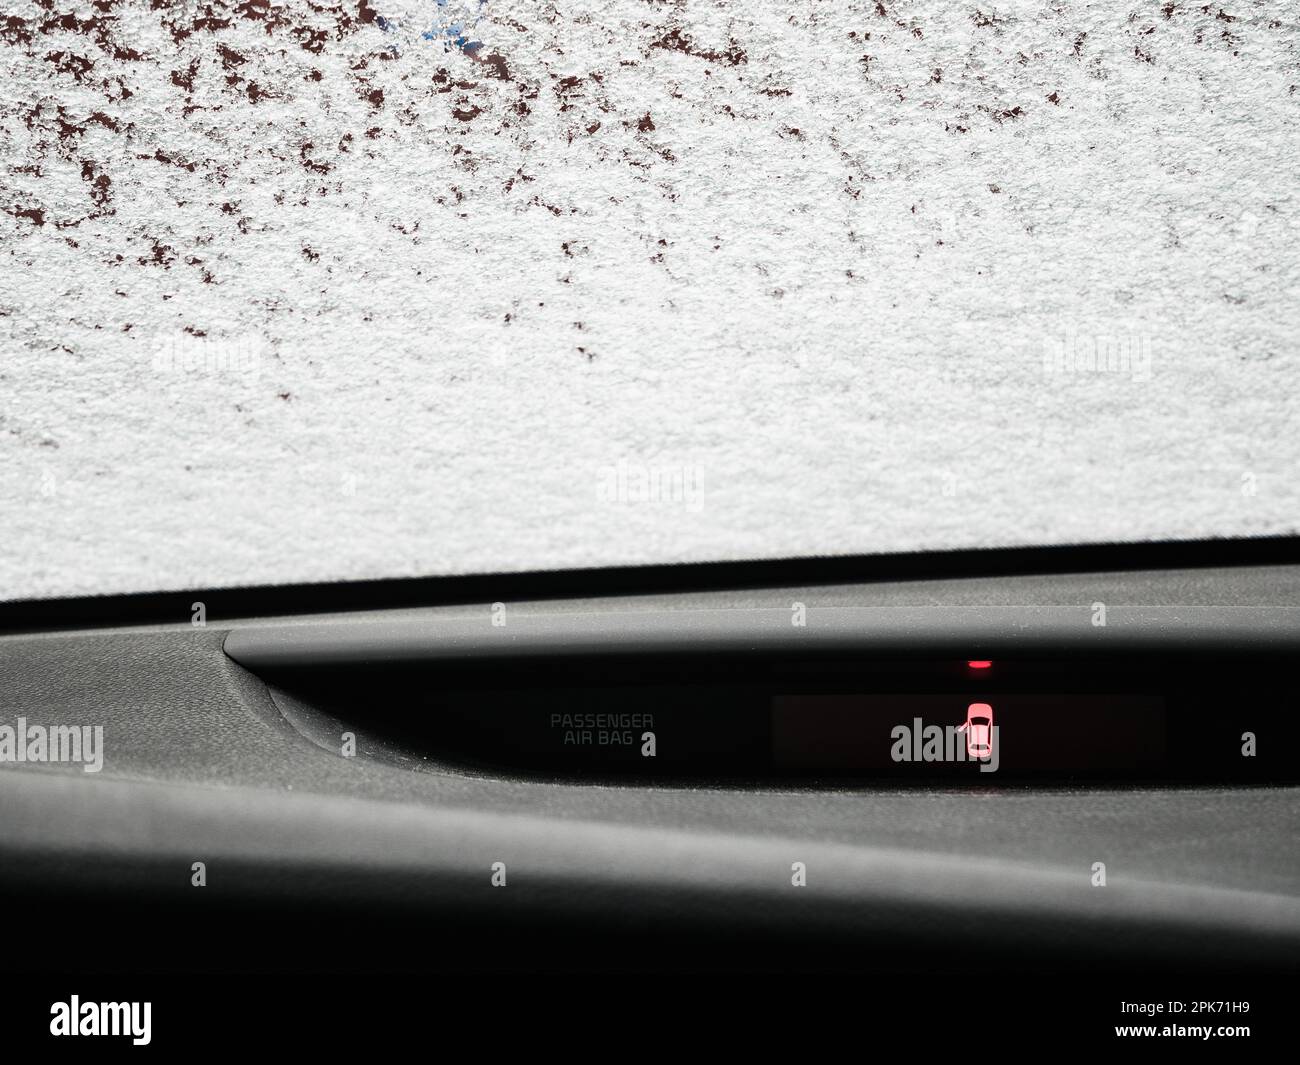 Un intérieur d'automobile élégant, avec une porte ouverte révélant un panneau et une fenêtre couverts de neige à l'extérieur. Banque D'Images